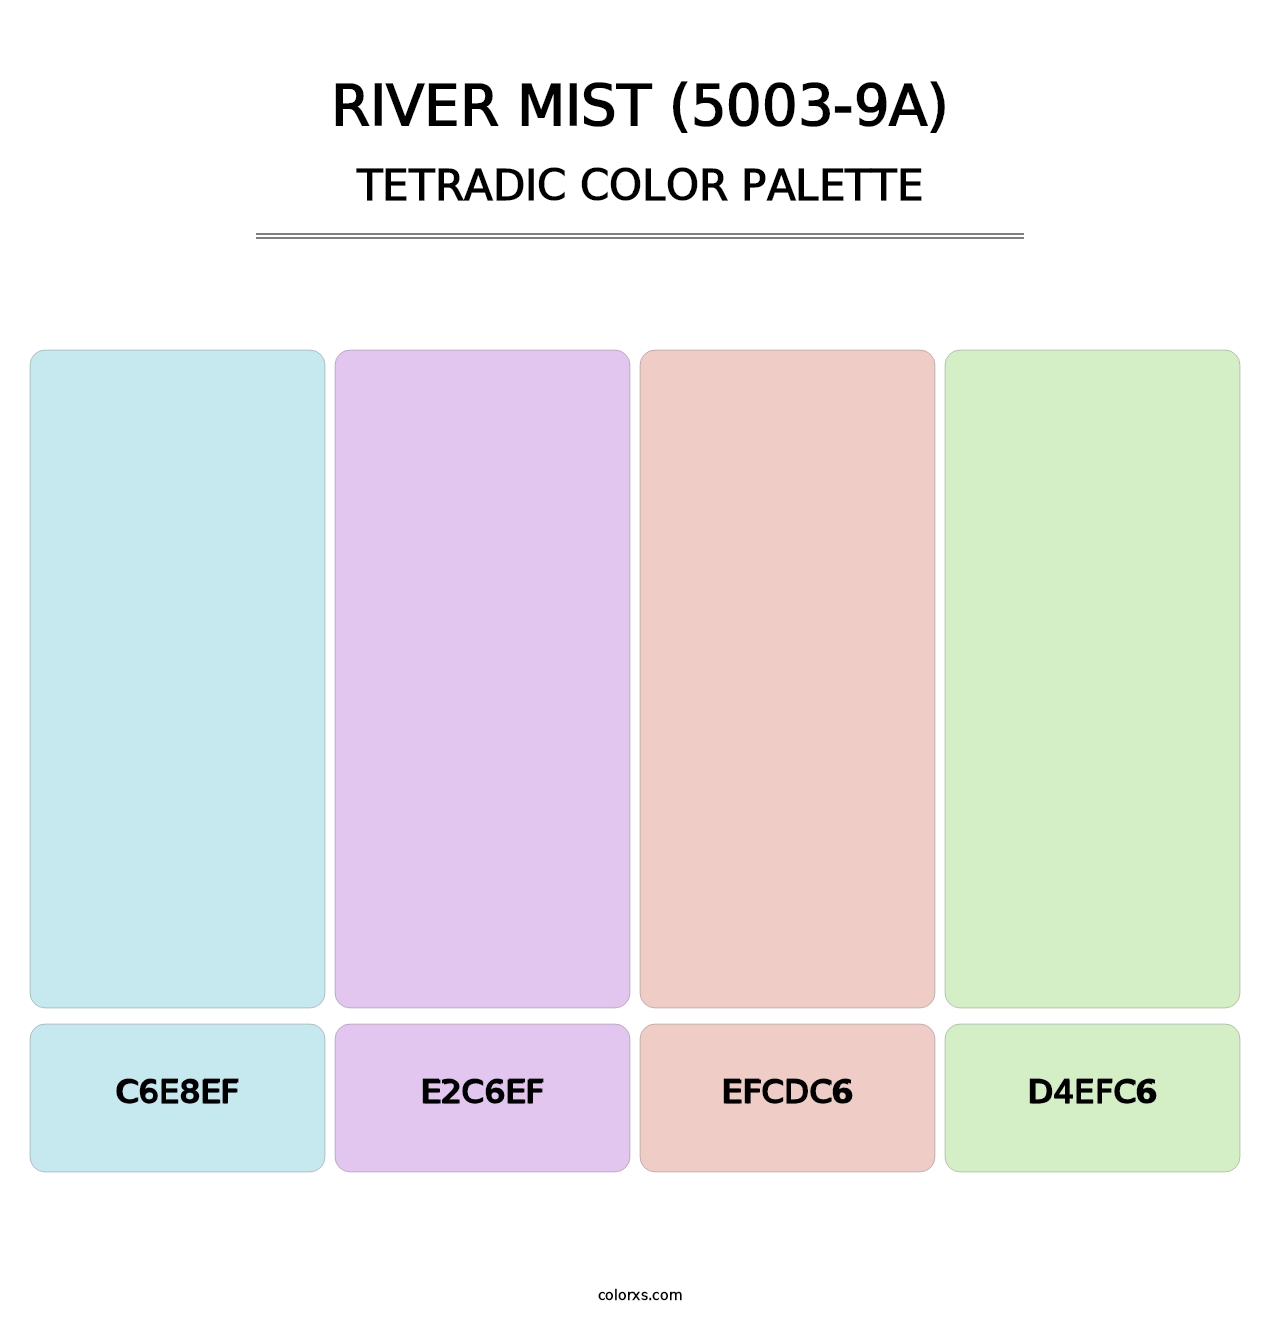 River Mist (5003-9A) - Tetradic Color Palette